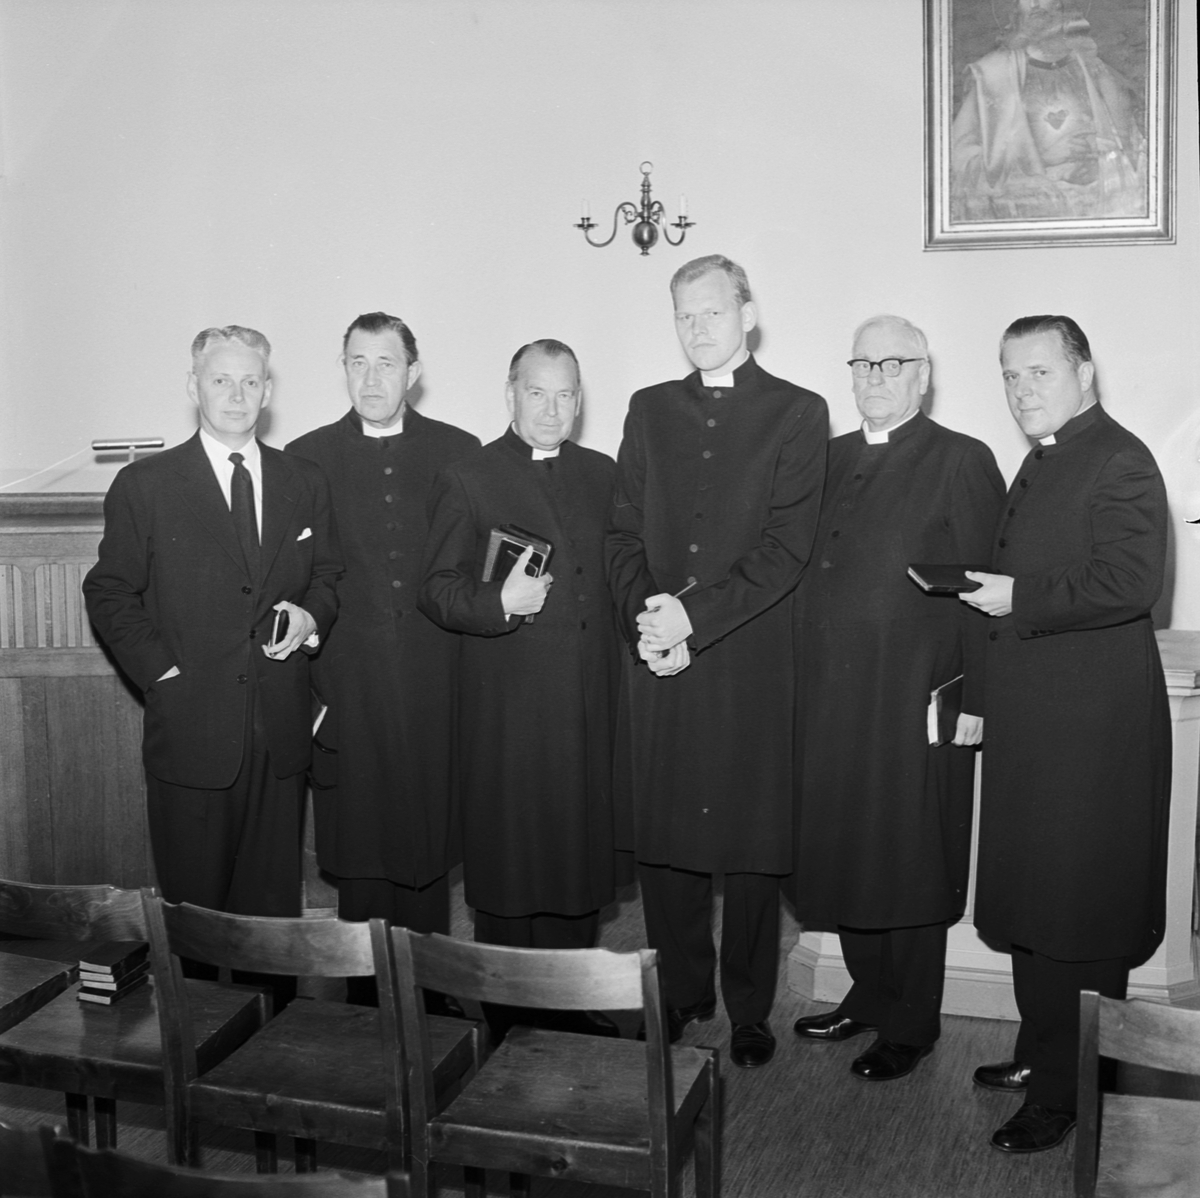 Studentliv, förste frikyrklige studentprästen vigd, Uppsala 1960